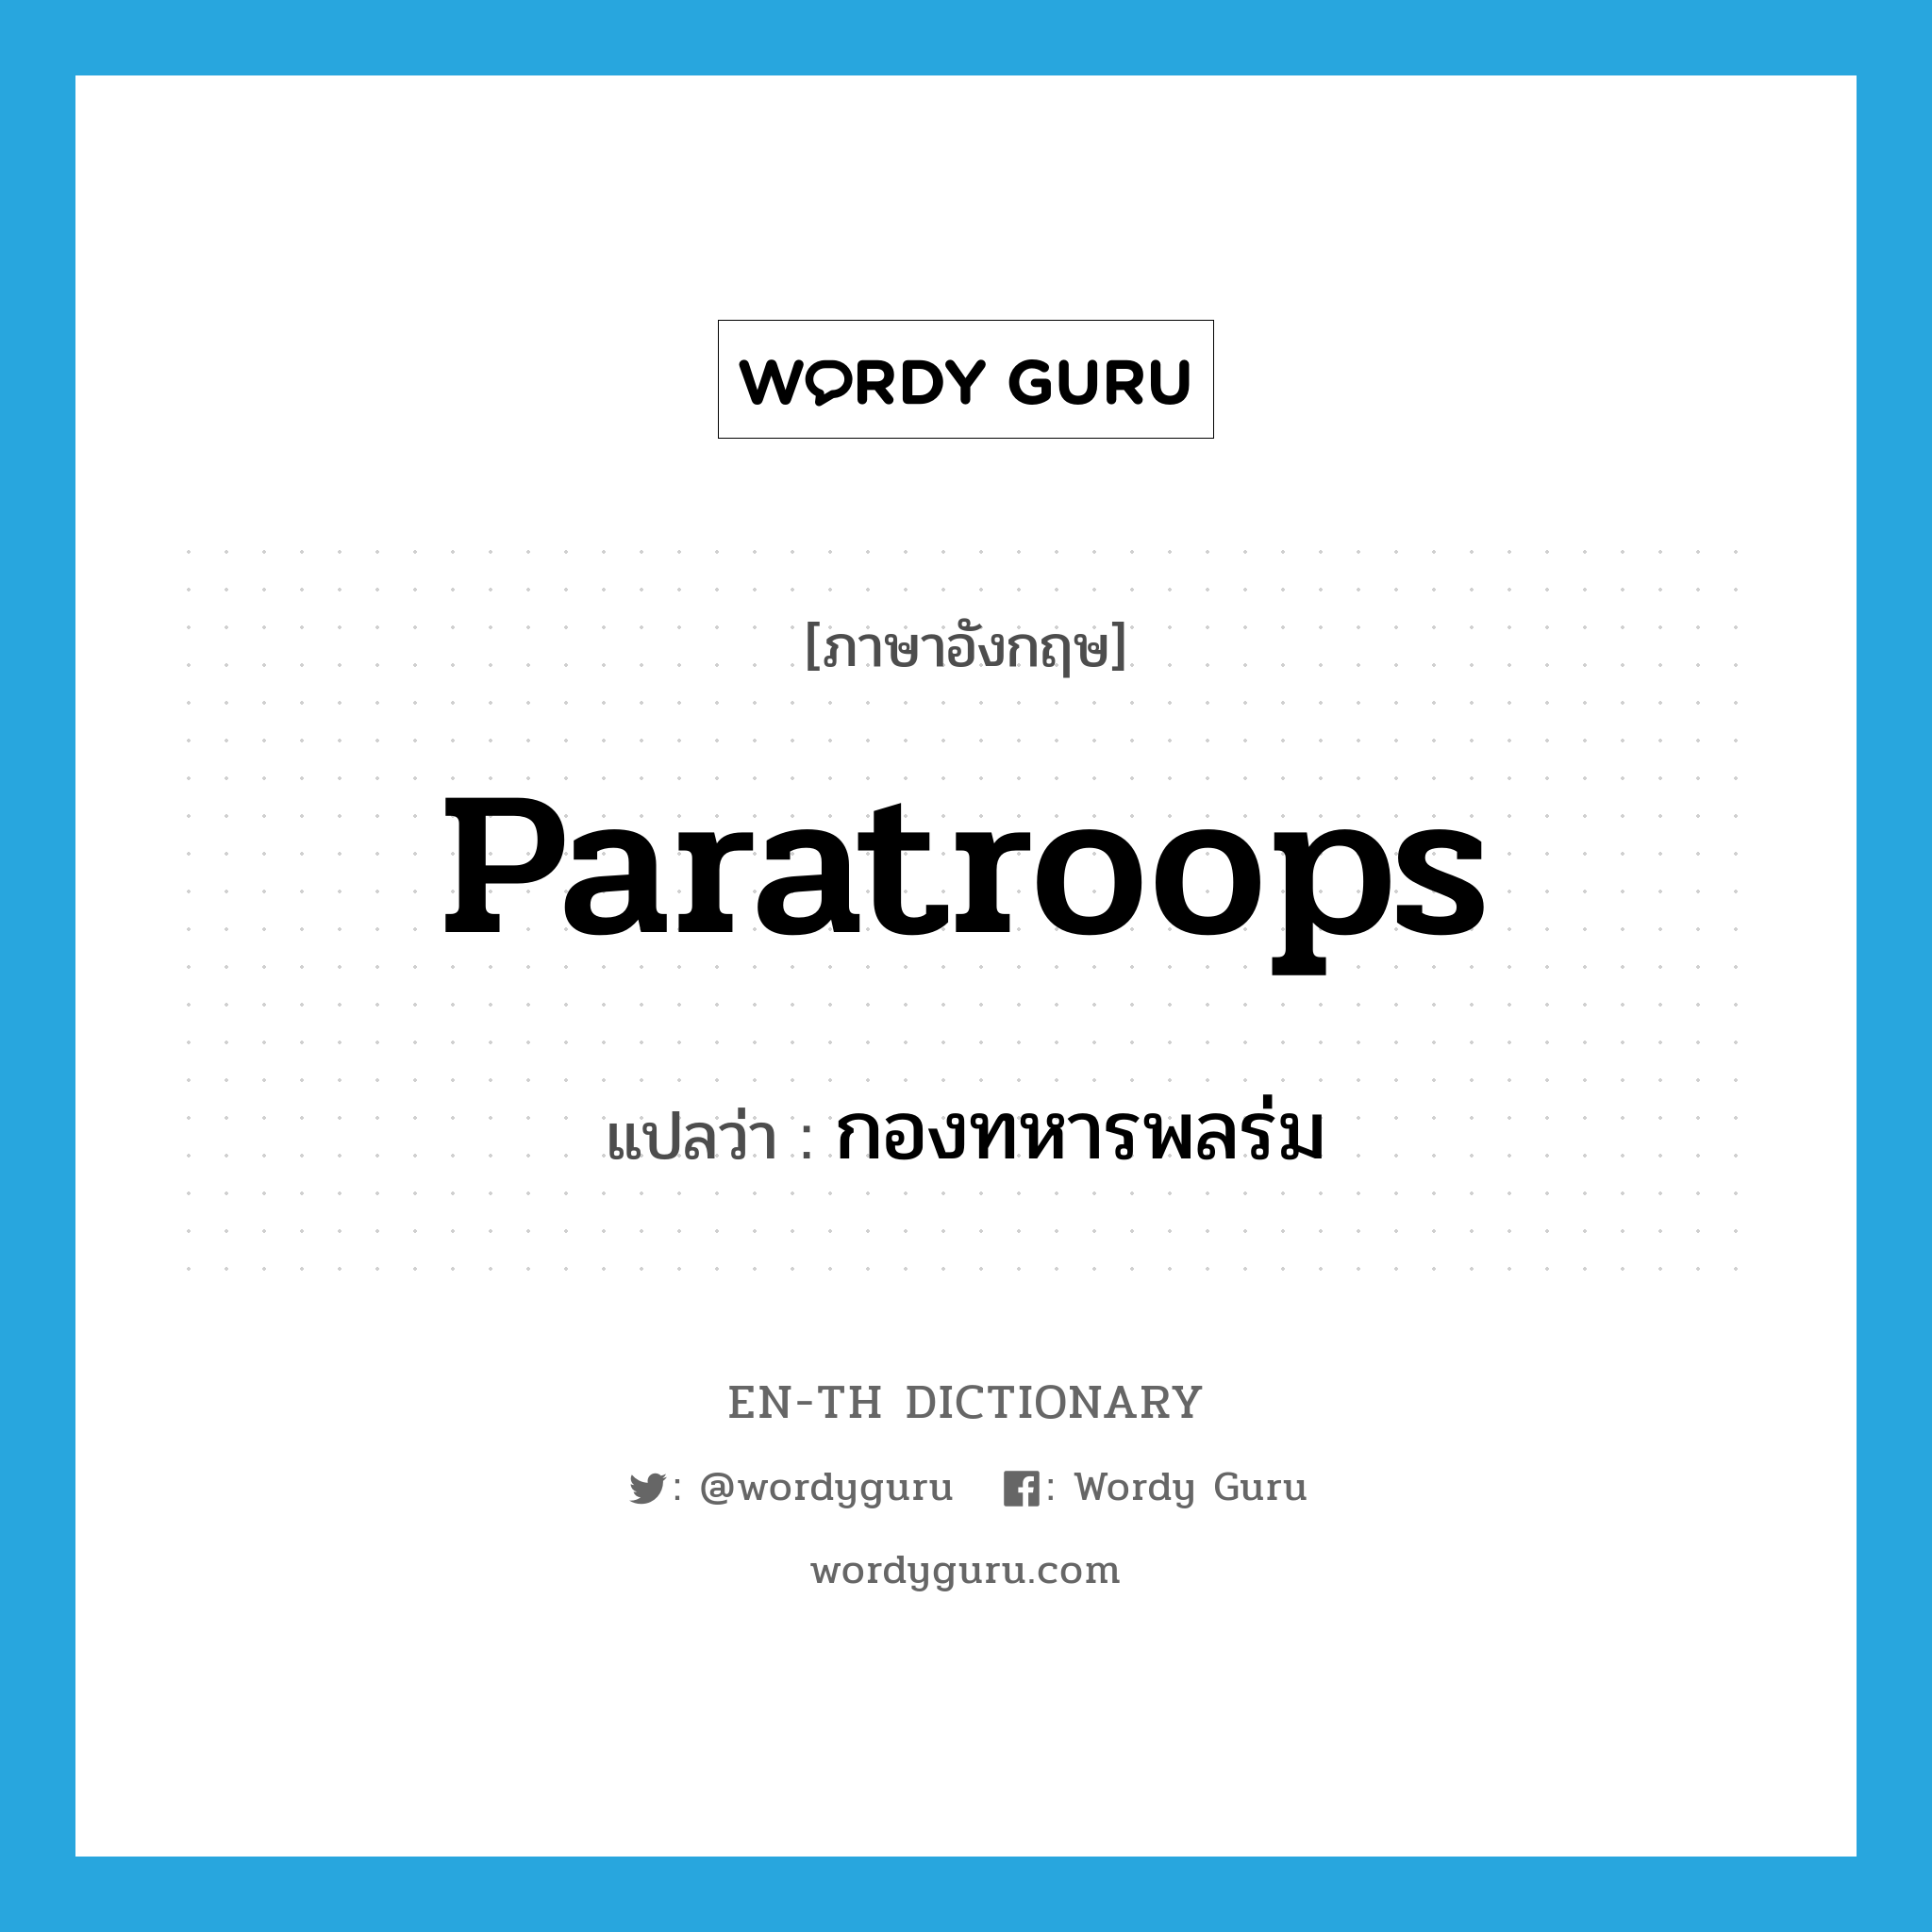 paratroops แปลว่า?, คำศัพท์ภาษาอังกฤษ paratroops แปลว่า กองทหารพลร่ม ประเภท N หมวด N